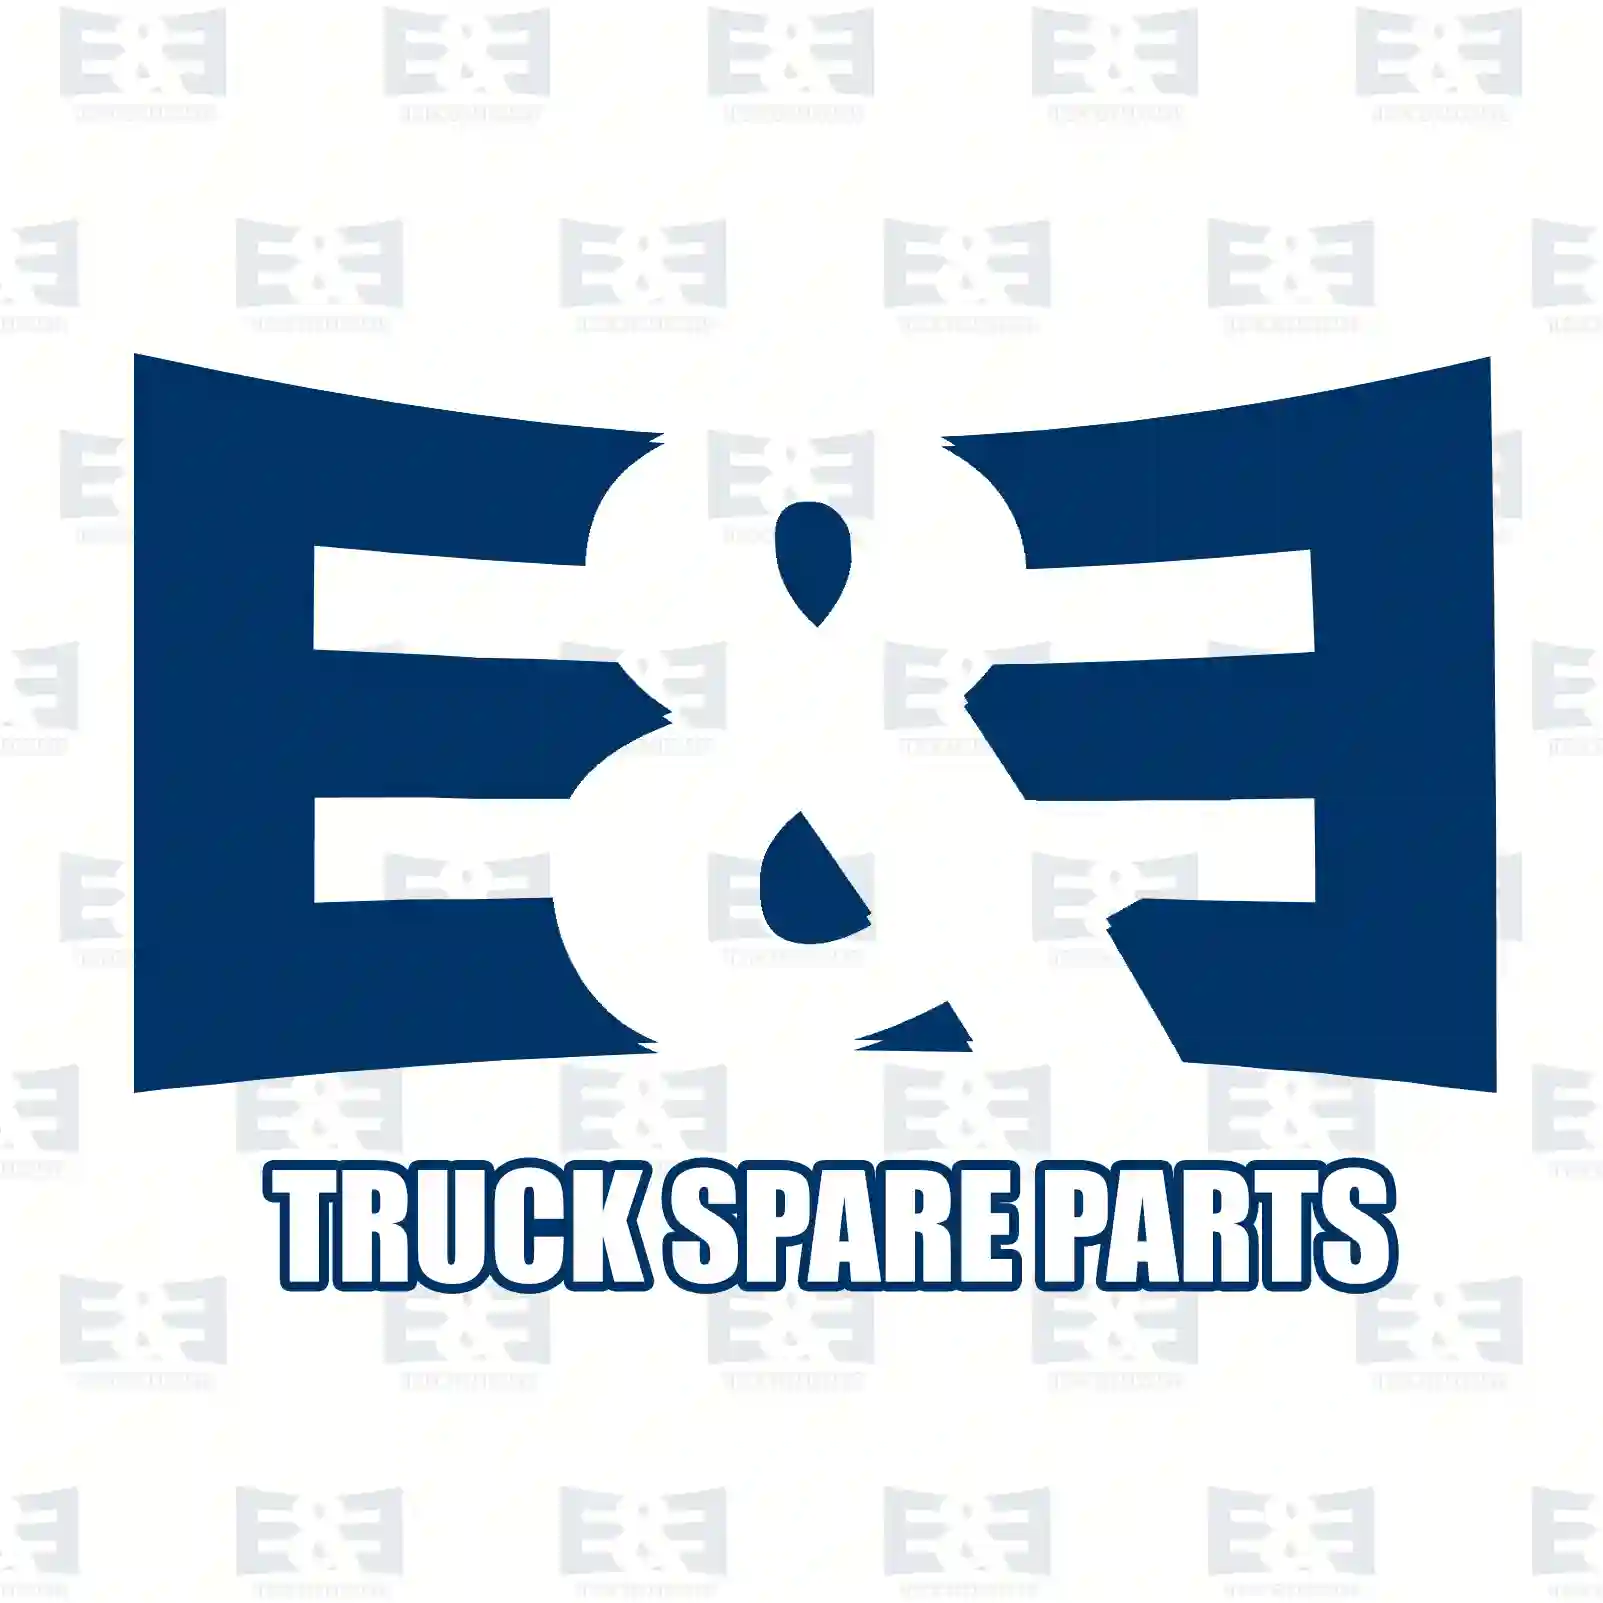 Step well case, left, 2E2289029, 5010353498, 5010353530, 5010544655, 20754045 ||  2E2289029 E&E Truck Spare Parts | Truck Spare Parts, Auotomotive Spare Parts Step well case, left, 2E2289029, 5010353498, 5010353530, 5010544655, 20754045 ||  2E2289029 E&E Truck Spare Parts | Truck Spare Parts, Auotomotive Spare Parts